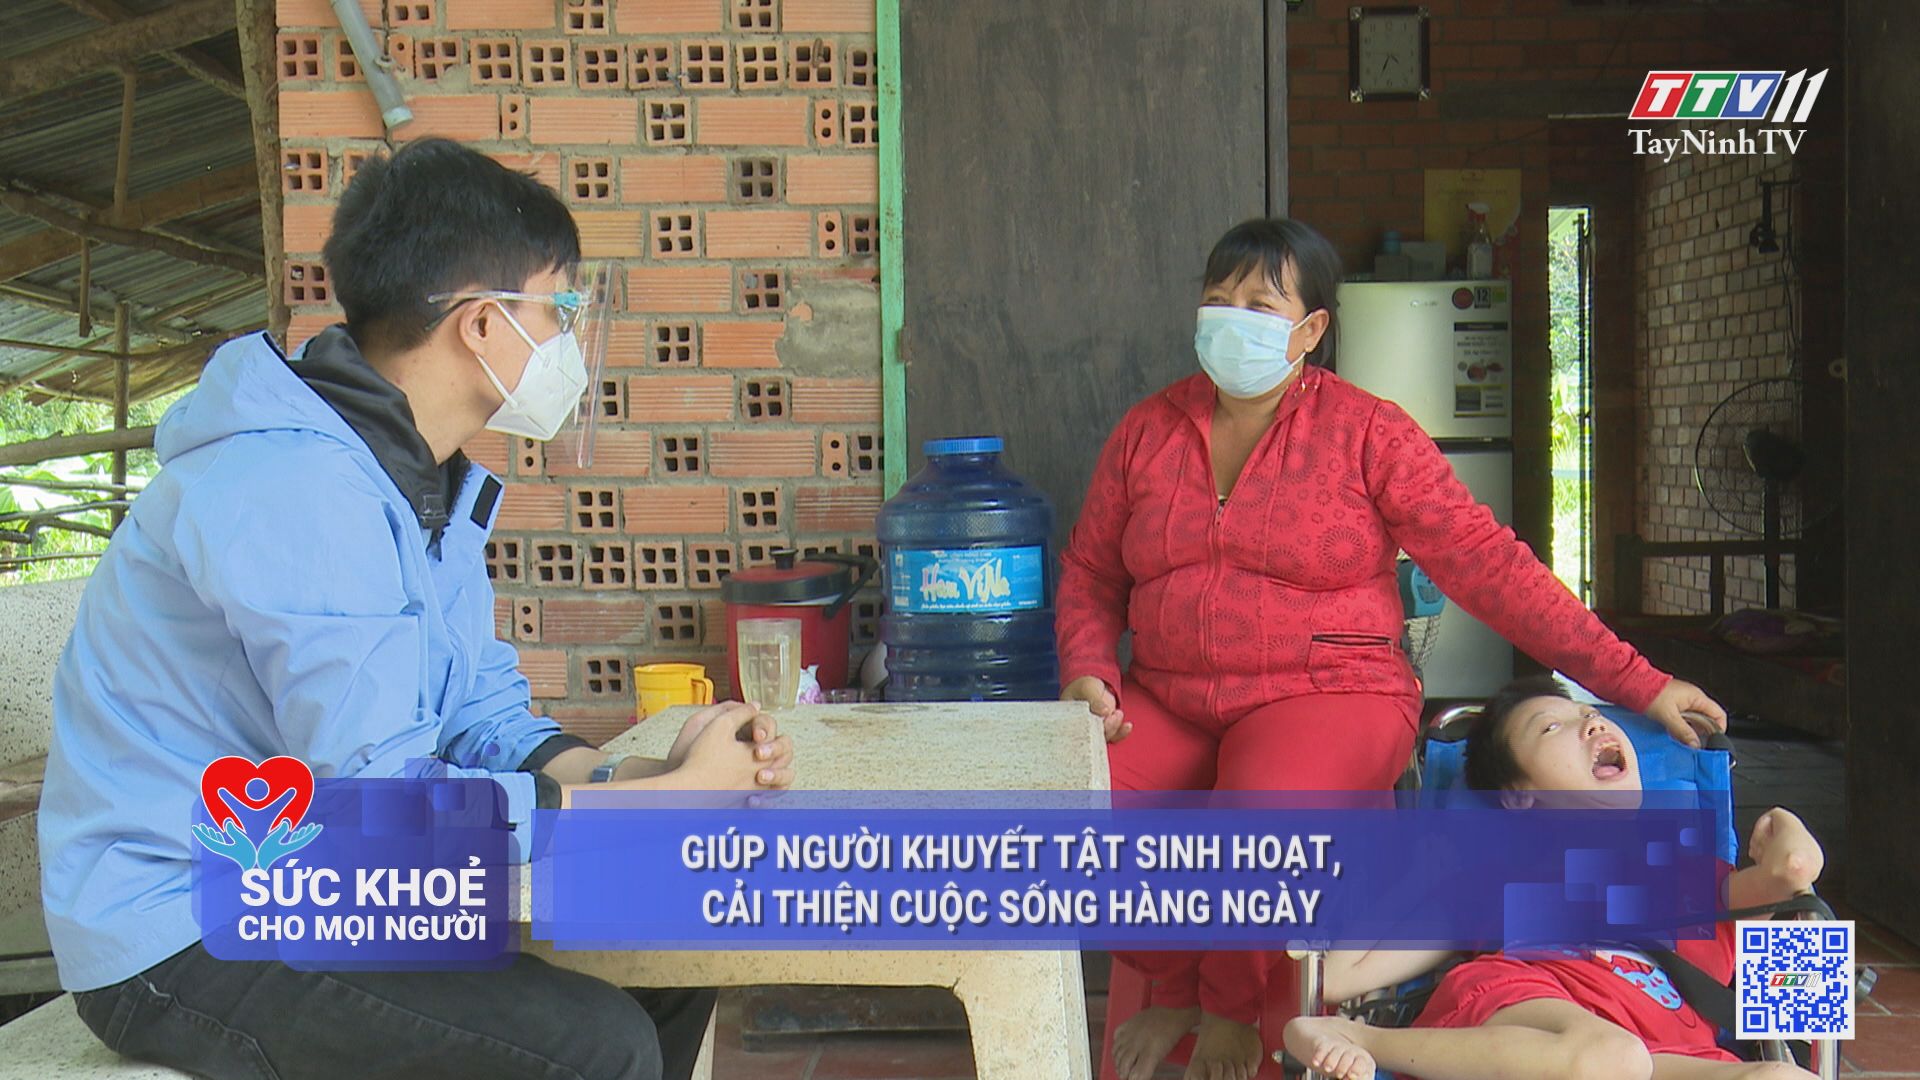 Giúp người khuyết tật sinh hoạt, cải thiện cuộc sống hàng ngày | SỨC KHỎE CHO MỌI NGƯỜI | TayNinhTV